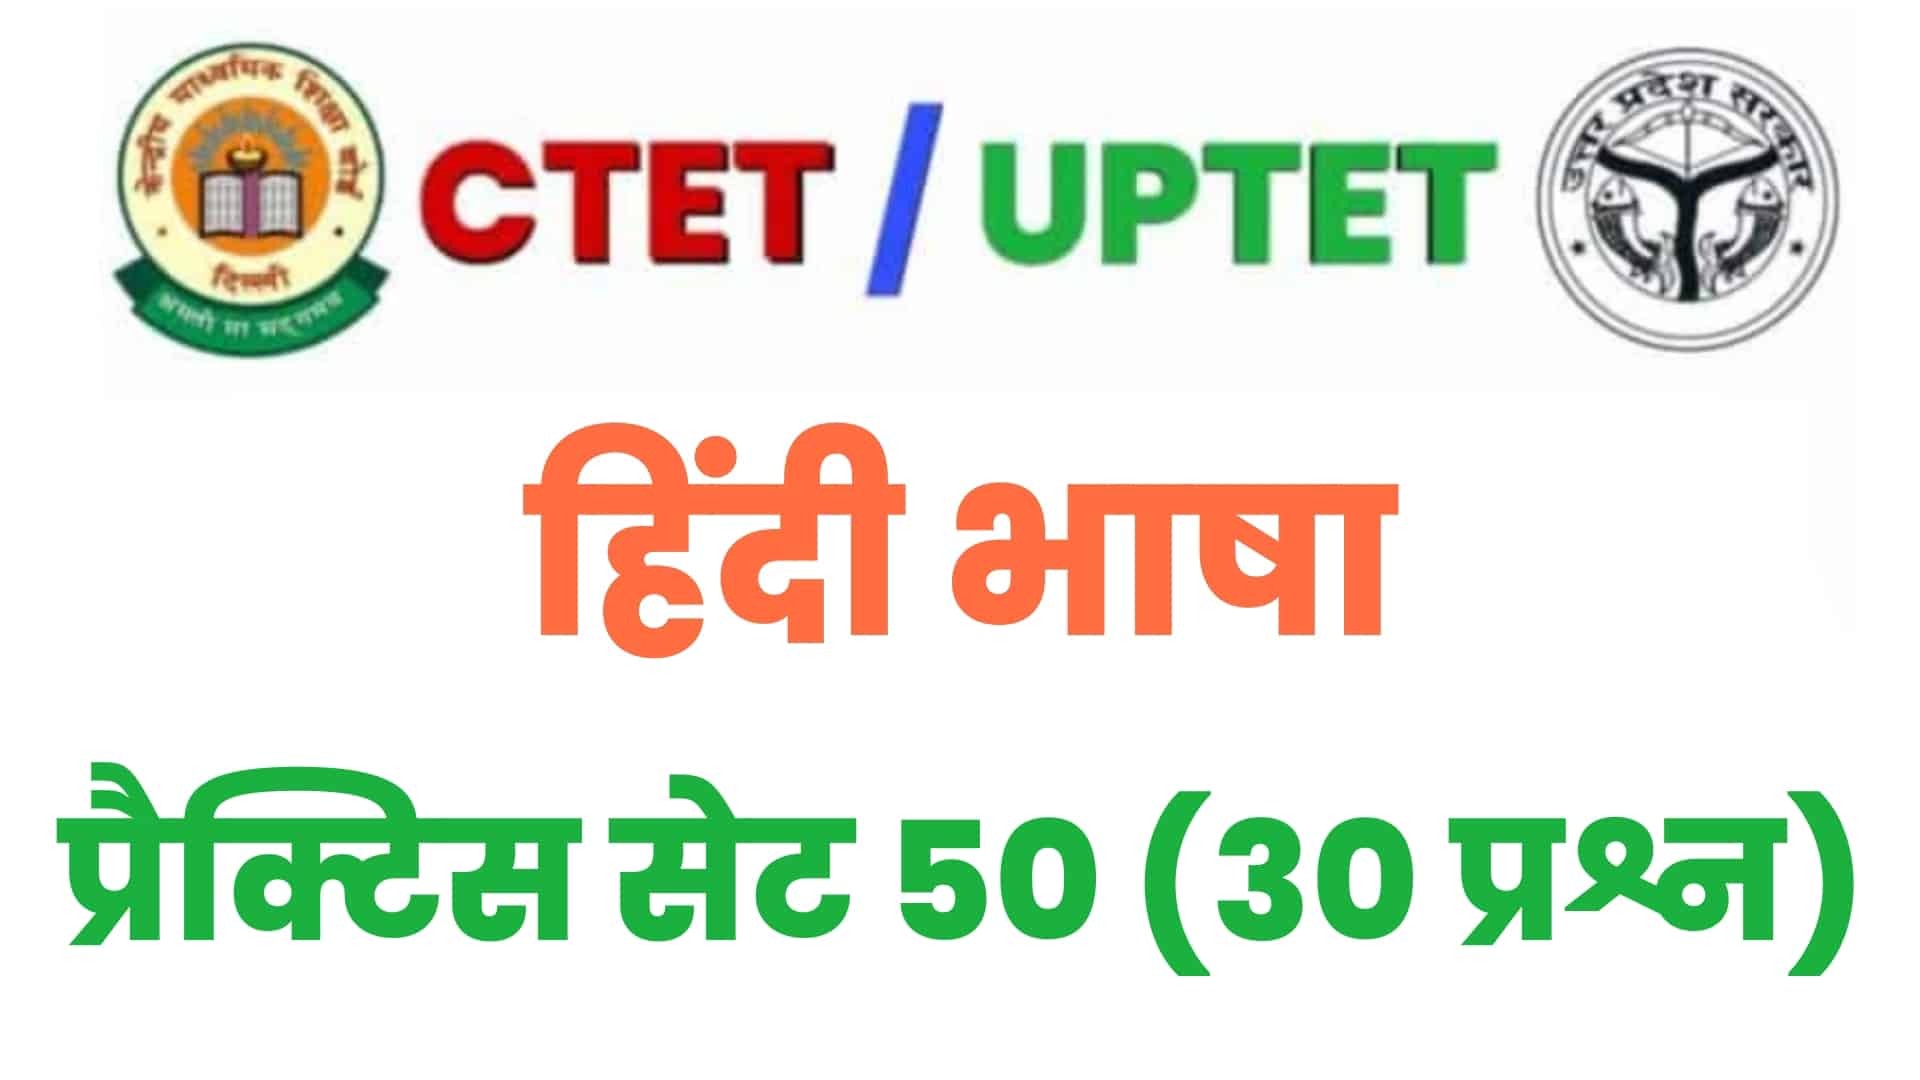 UPTET/CTET हिंदी भाषा प्रैक्टिस सेट 50 : विगत वर्षों के इन 30 महत्वपूर्ण प्रश्नों पर डालें एक नज़र